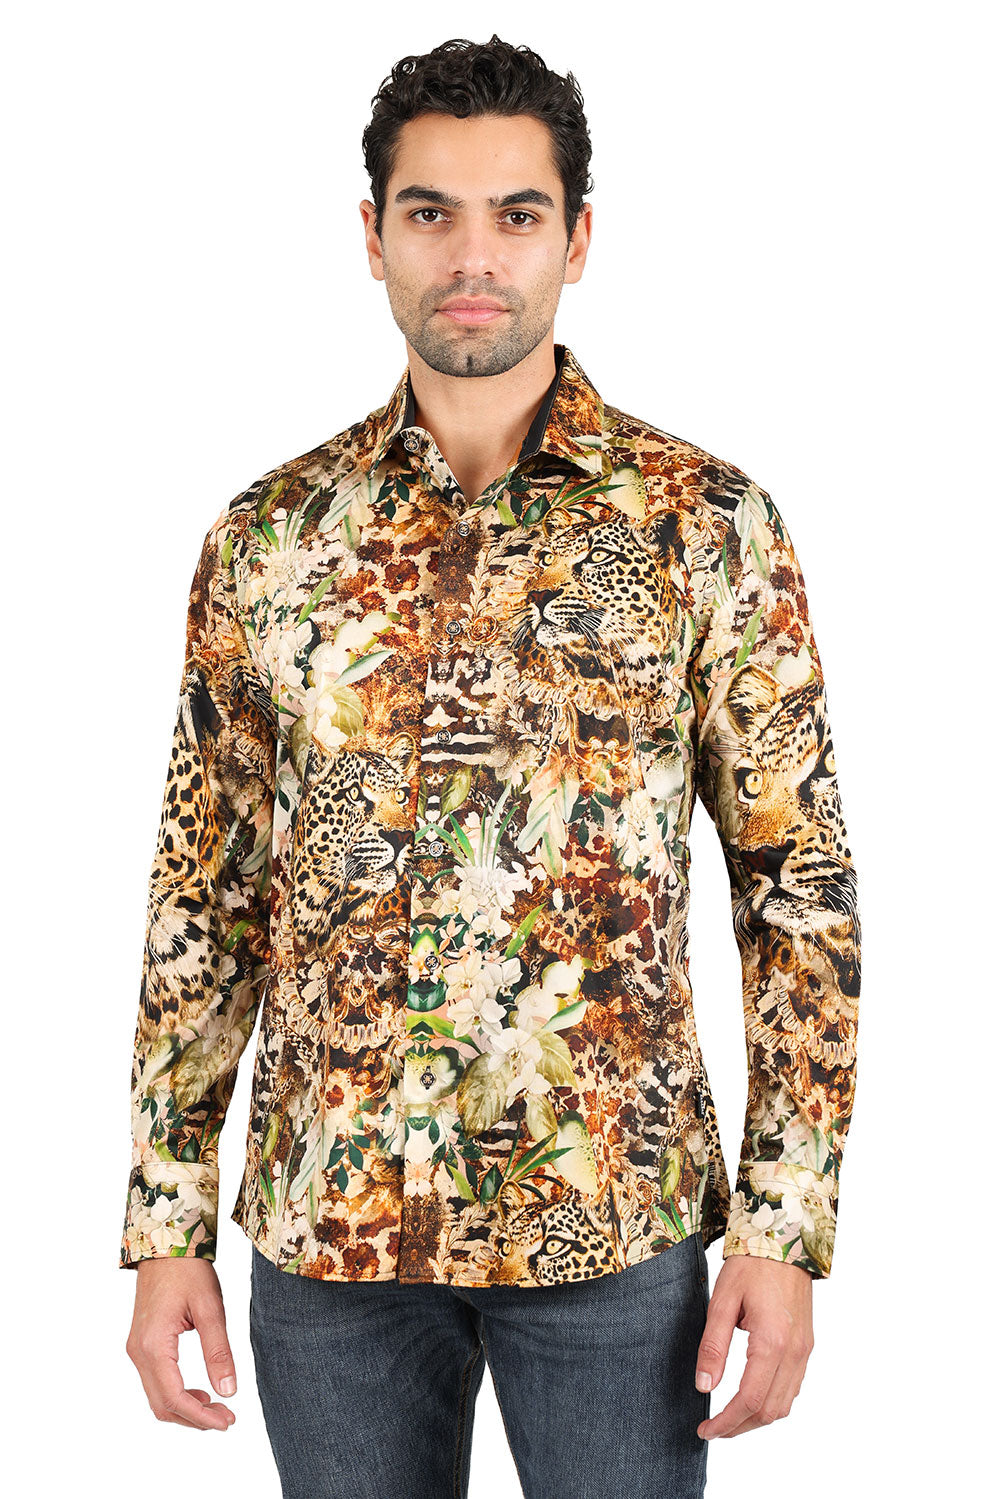 BARABAS men's tiger leopard floral printed long sleeve shirts 2SP29